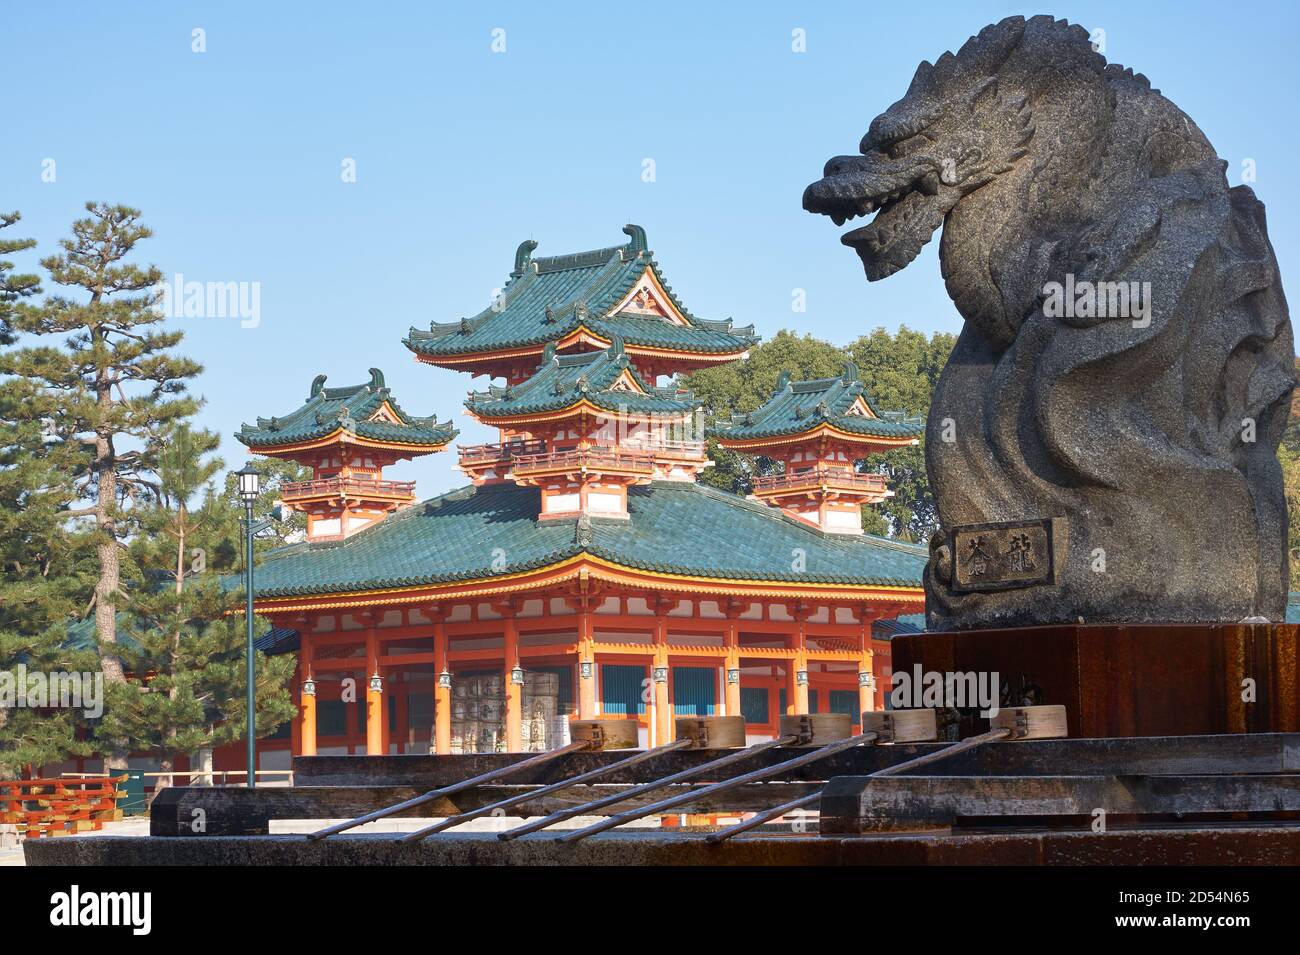 Statua del drago sopra il bacino di abluizione dell'acqua per la purificazione cerimoniale (tsukubai) con vermiglio Byakko-ro Torre del Santuario Heian-jingu sullo sfondo. Foto Stock